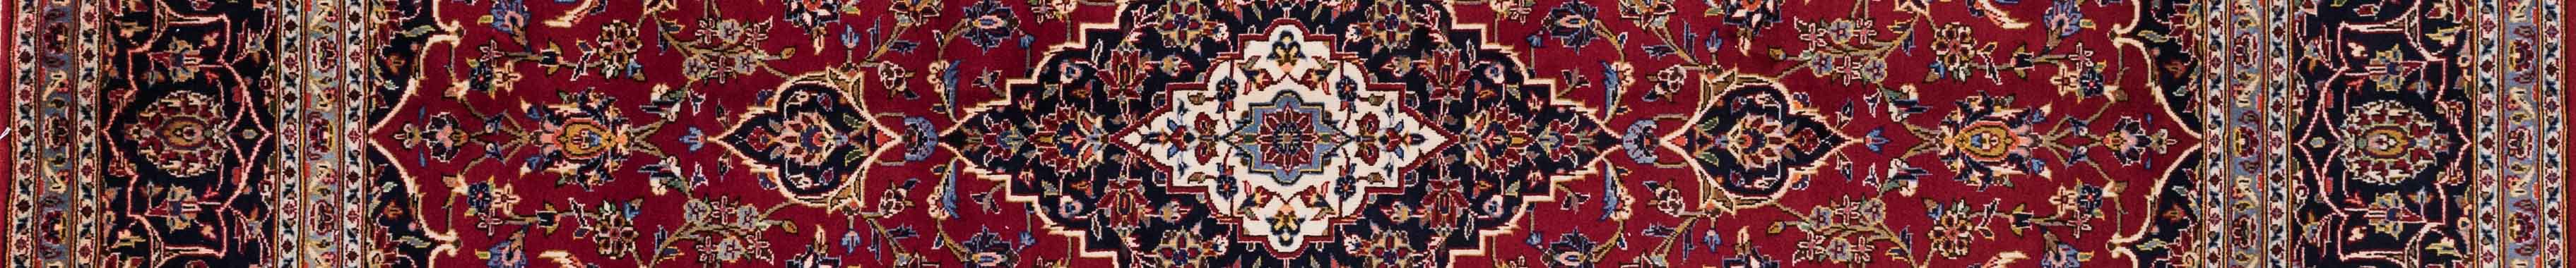 Kashan Persian Carpet Rug N1Carpet Canada Montreal Tapis Persan 2250